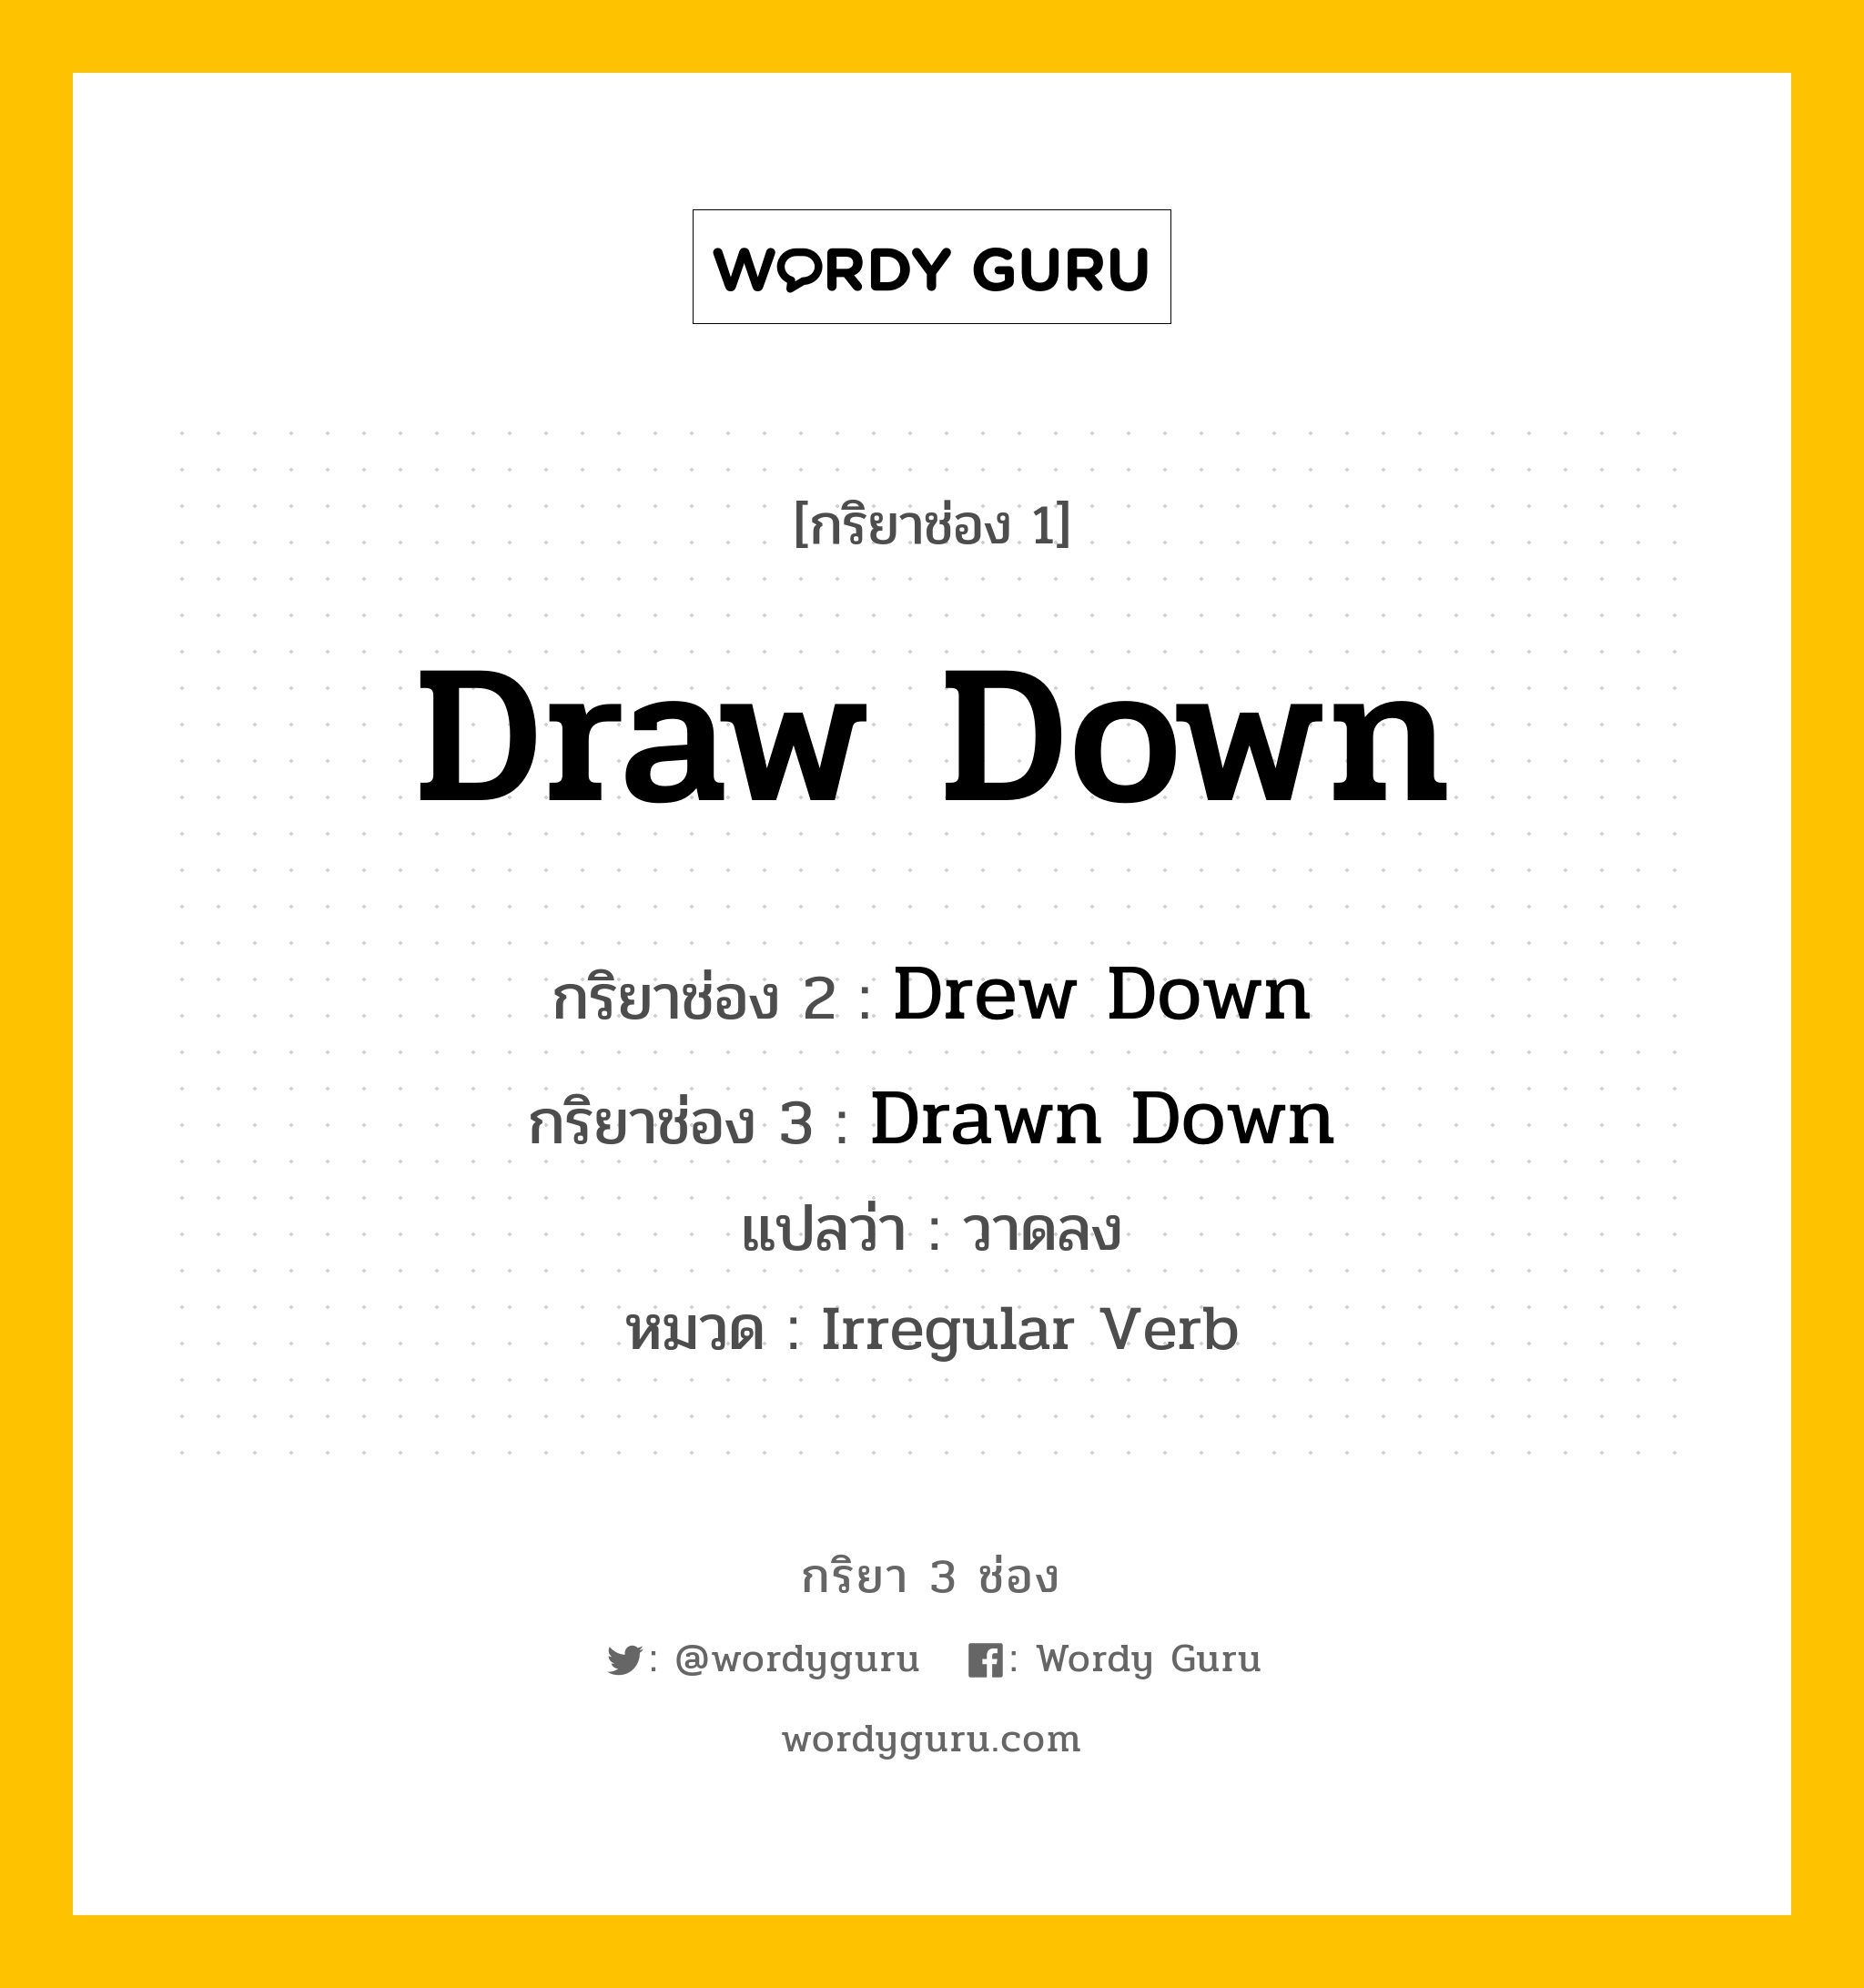 Draw Down มีกริยา 3 ช่องอะไรบ้าง? คำศัพท์ในกลุ่มประเภท Irregular Verb, กริยาช่อง 1 Draw Down กริยาช่อง 2 Drew Down กริยาช่อง 3 Drawn Down แปลว่า วาดลง หมวด Irregular Verb หมวด Irregular Verb